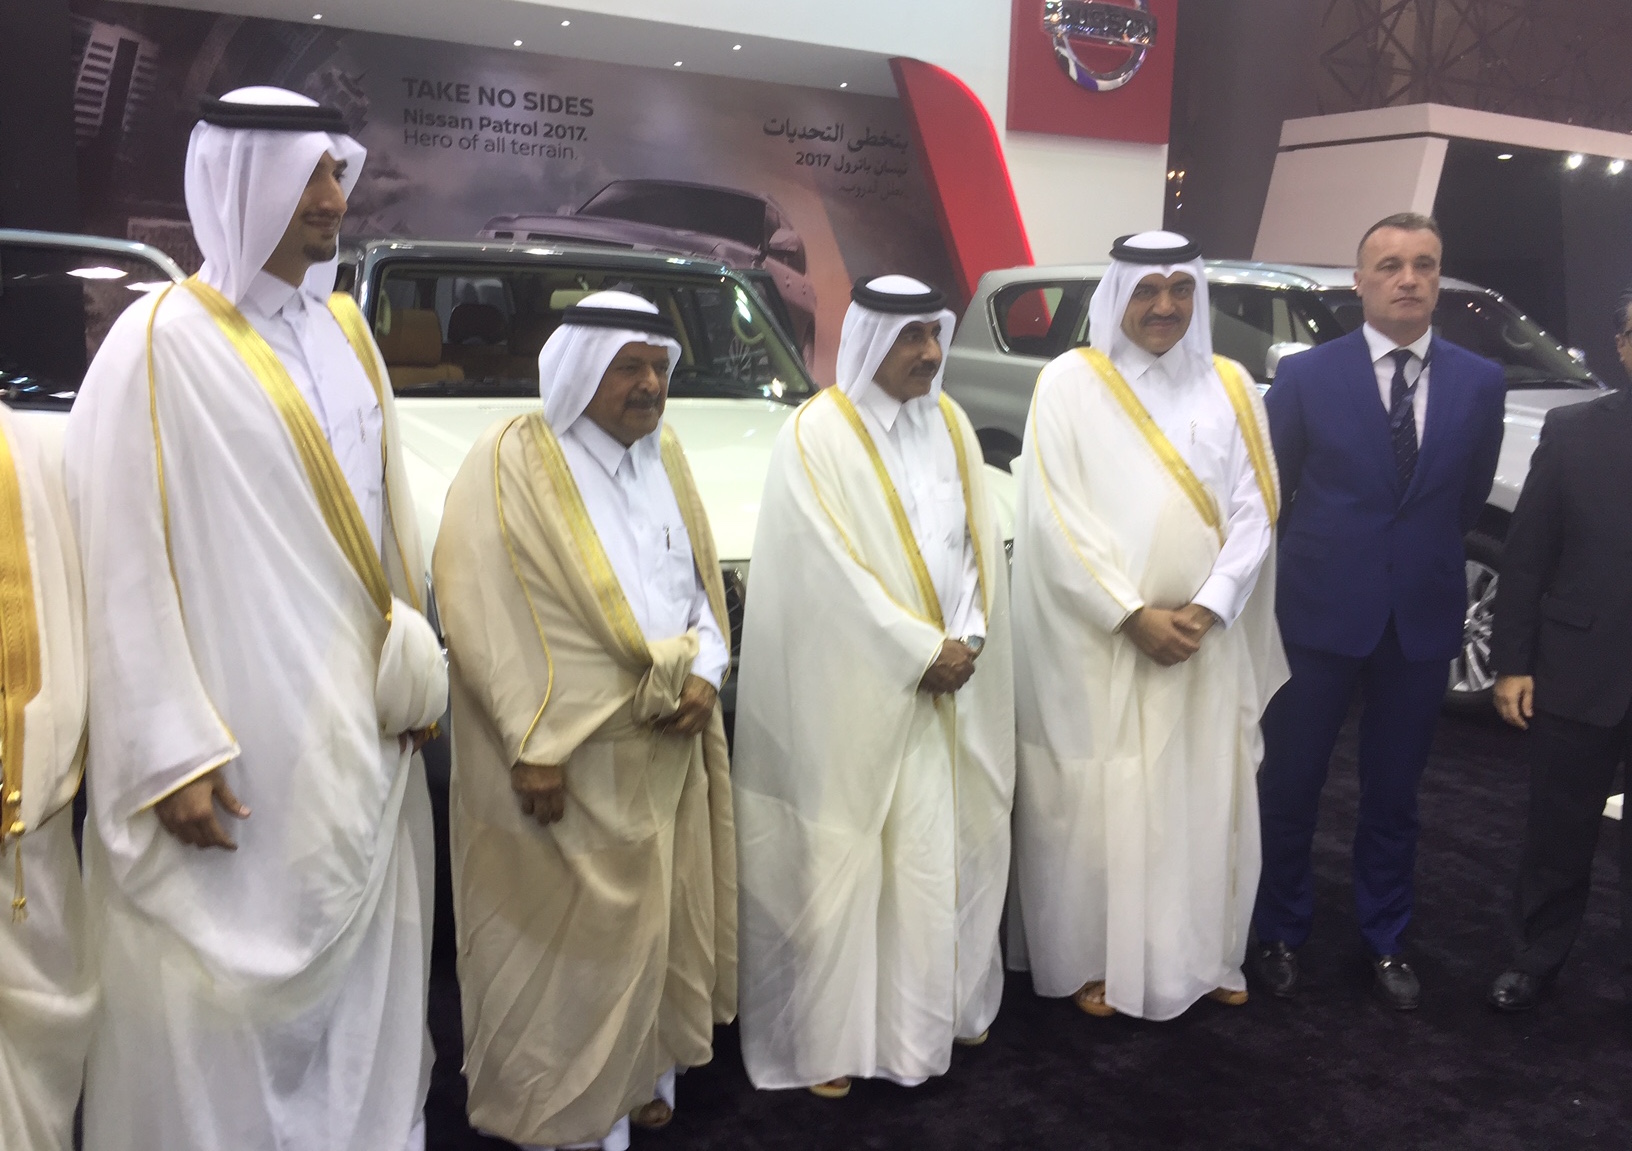 Qatar Motor Show 2017 Opens its Doors Today